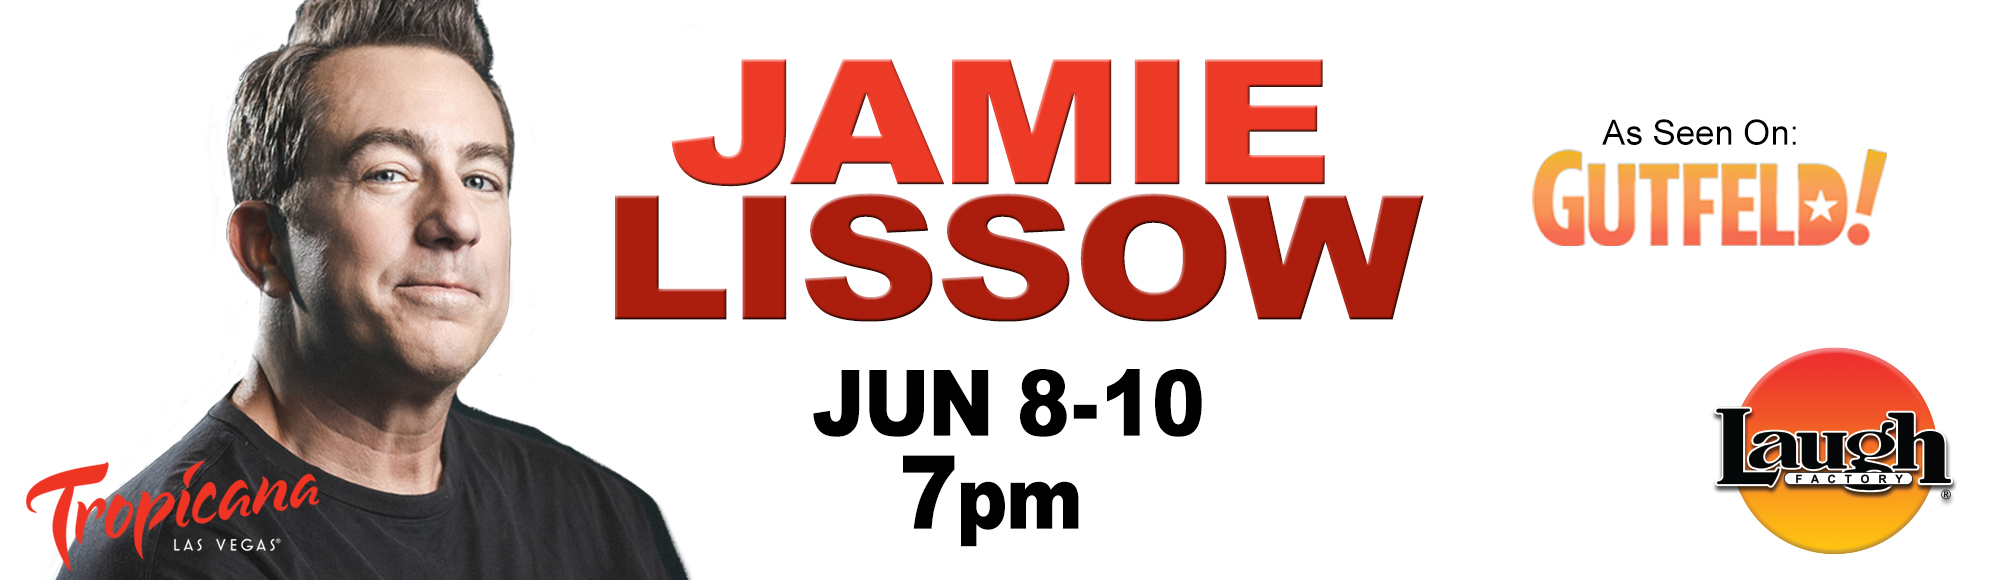 Jamie Lissow Show Las Vegas Tickets & Reviews